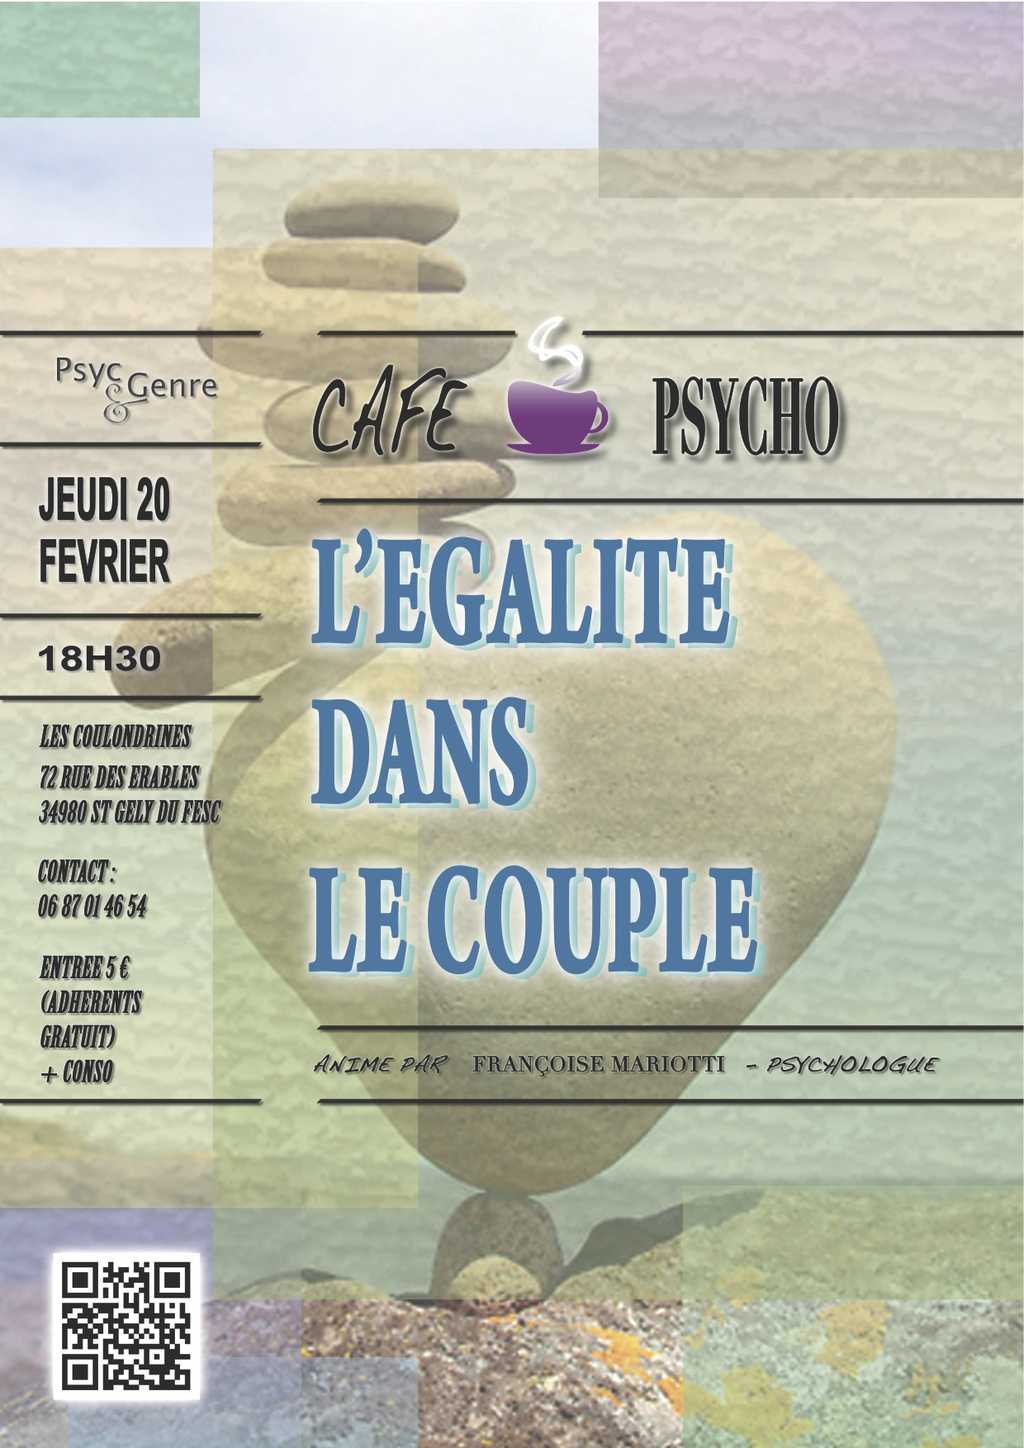 Café psycho : "L'égalité dans le couple"